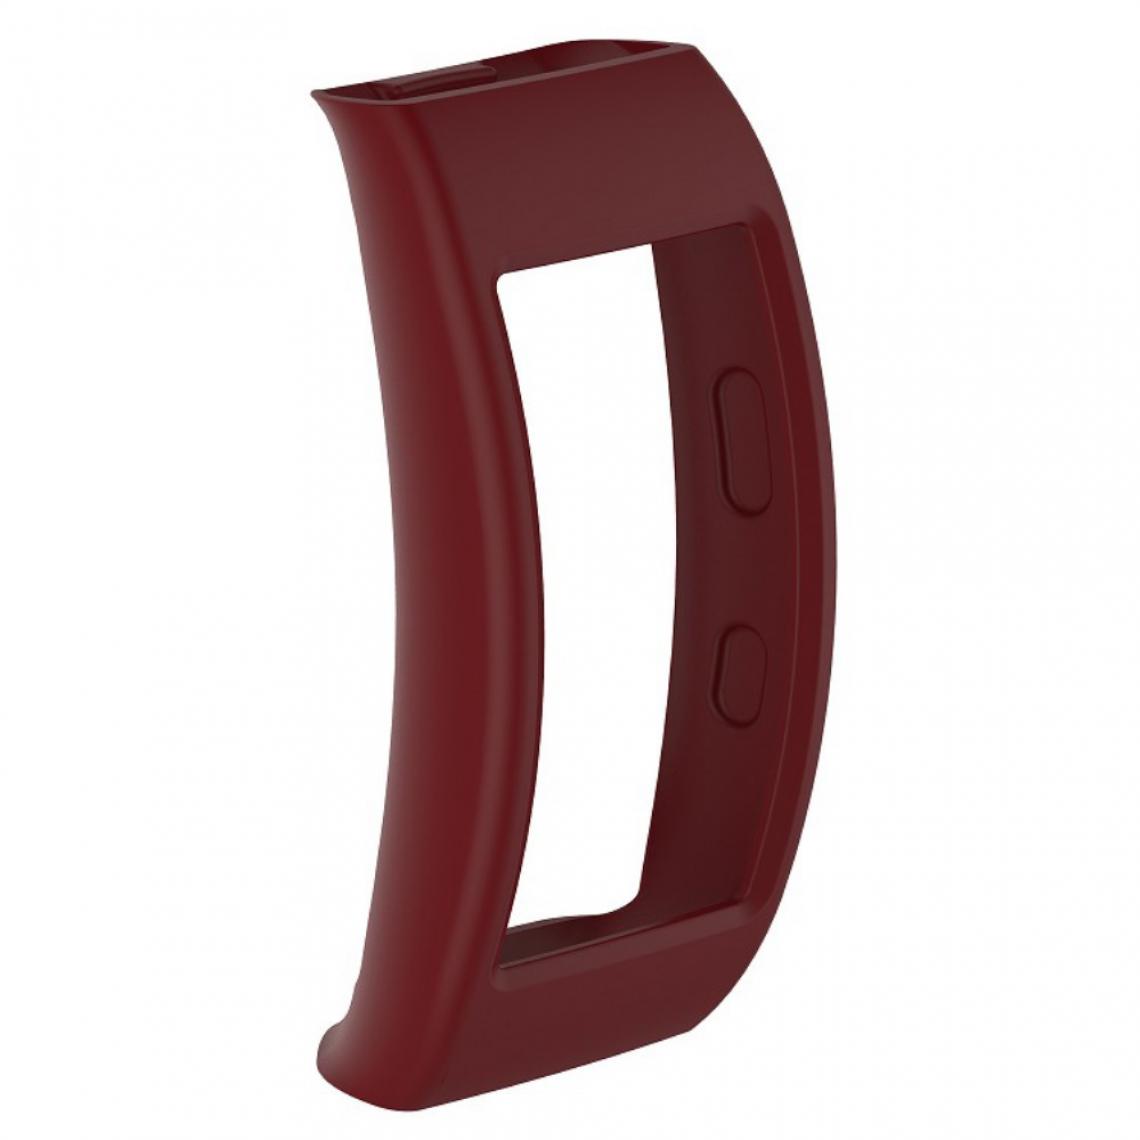 Other - Coque en silicone souple rouge vin pour votre Samsung Gear Fit2 Pro - Accessoires bracelet connecté